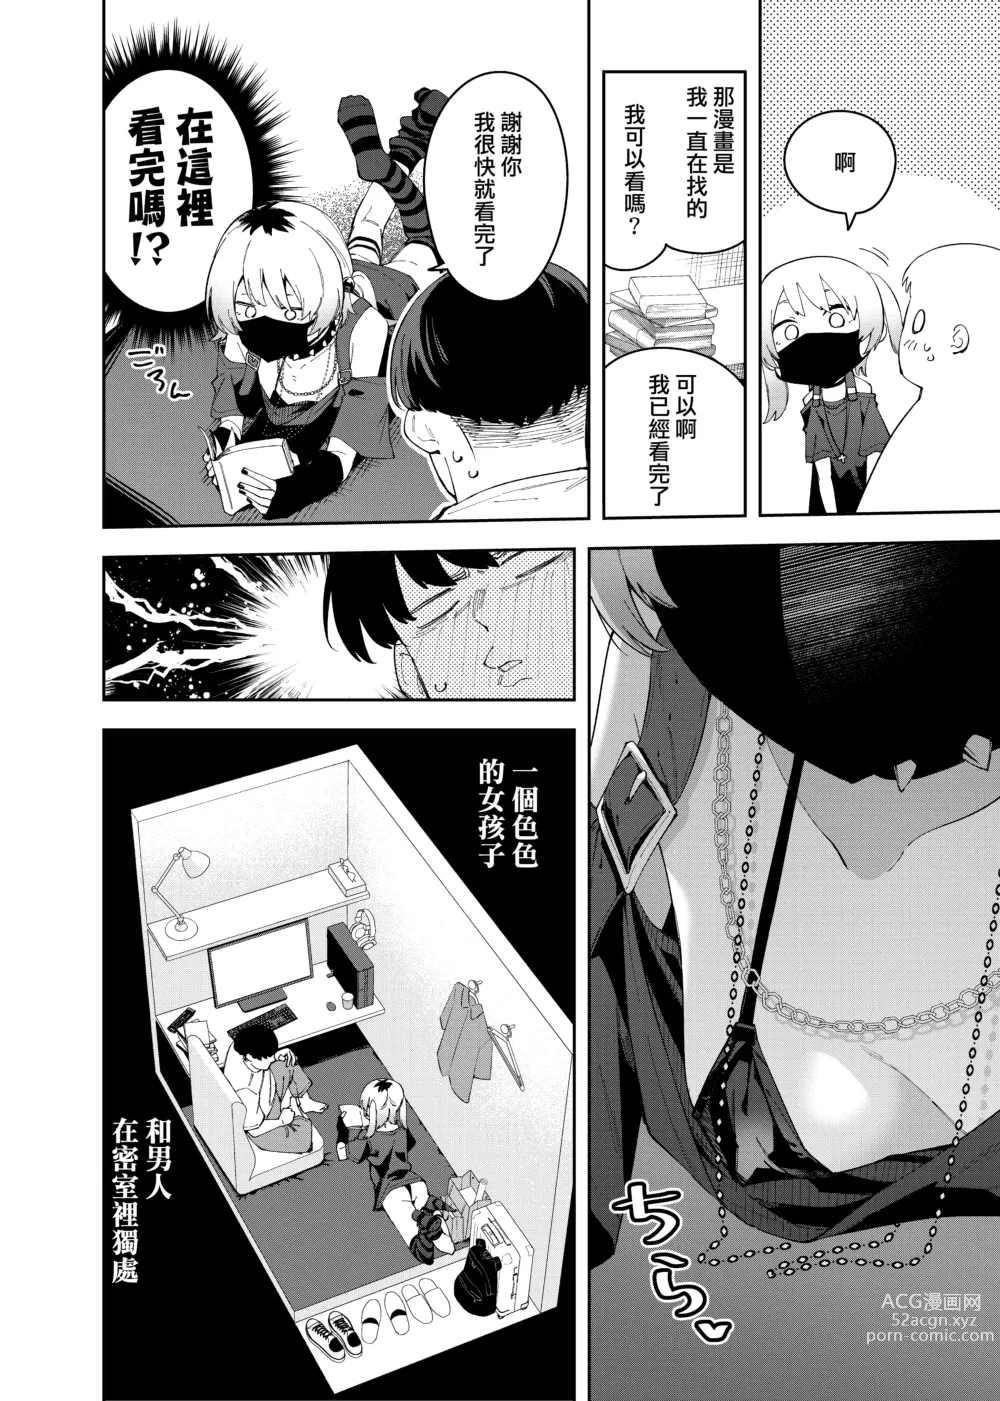 Page 16 of doujinshi Rinjin wa Yuumei Haishinsha 4-ninme